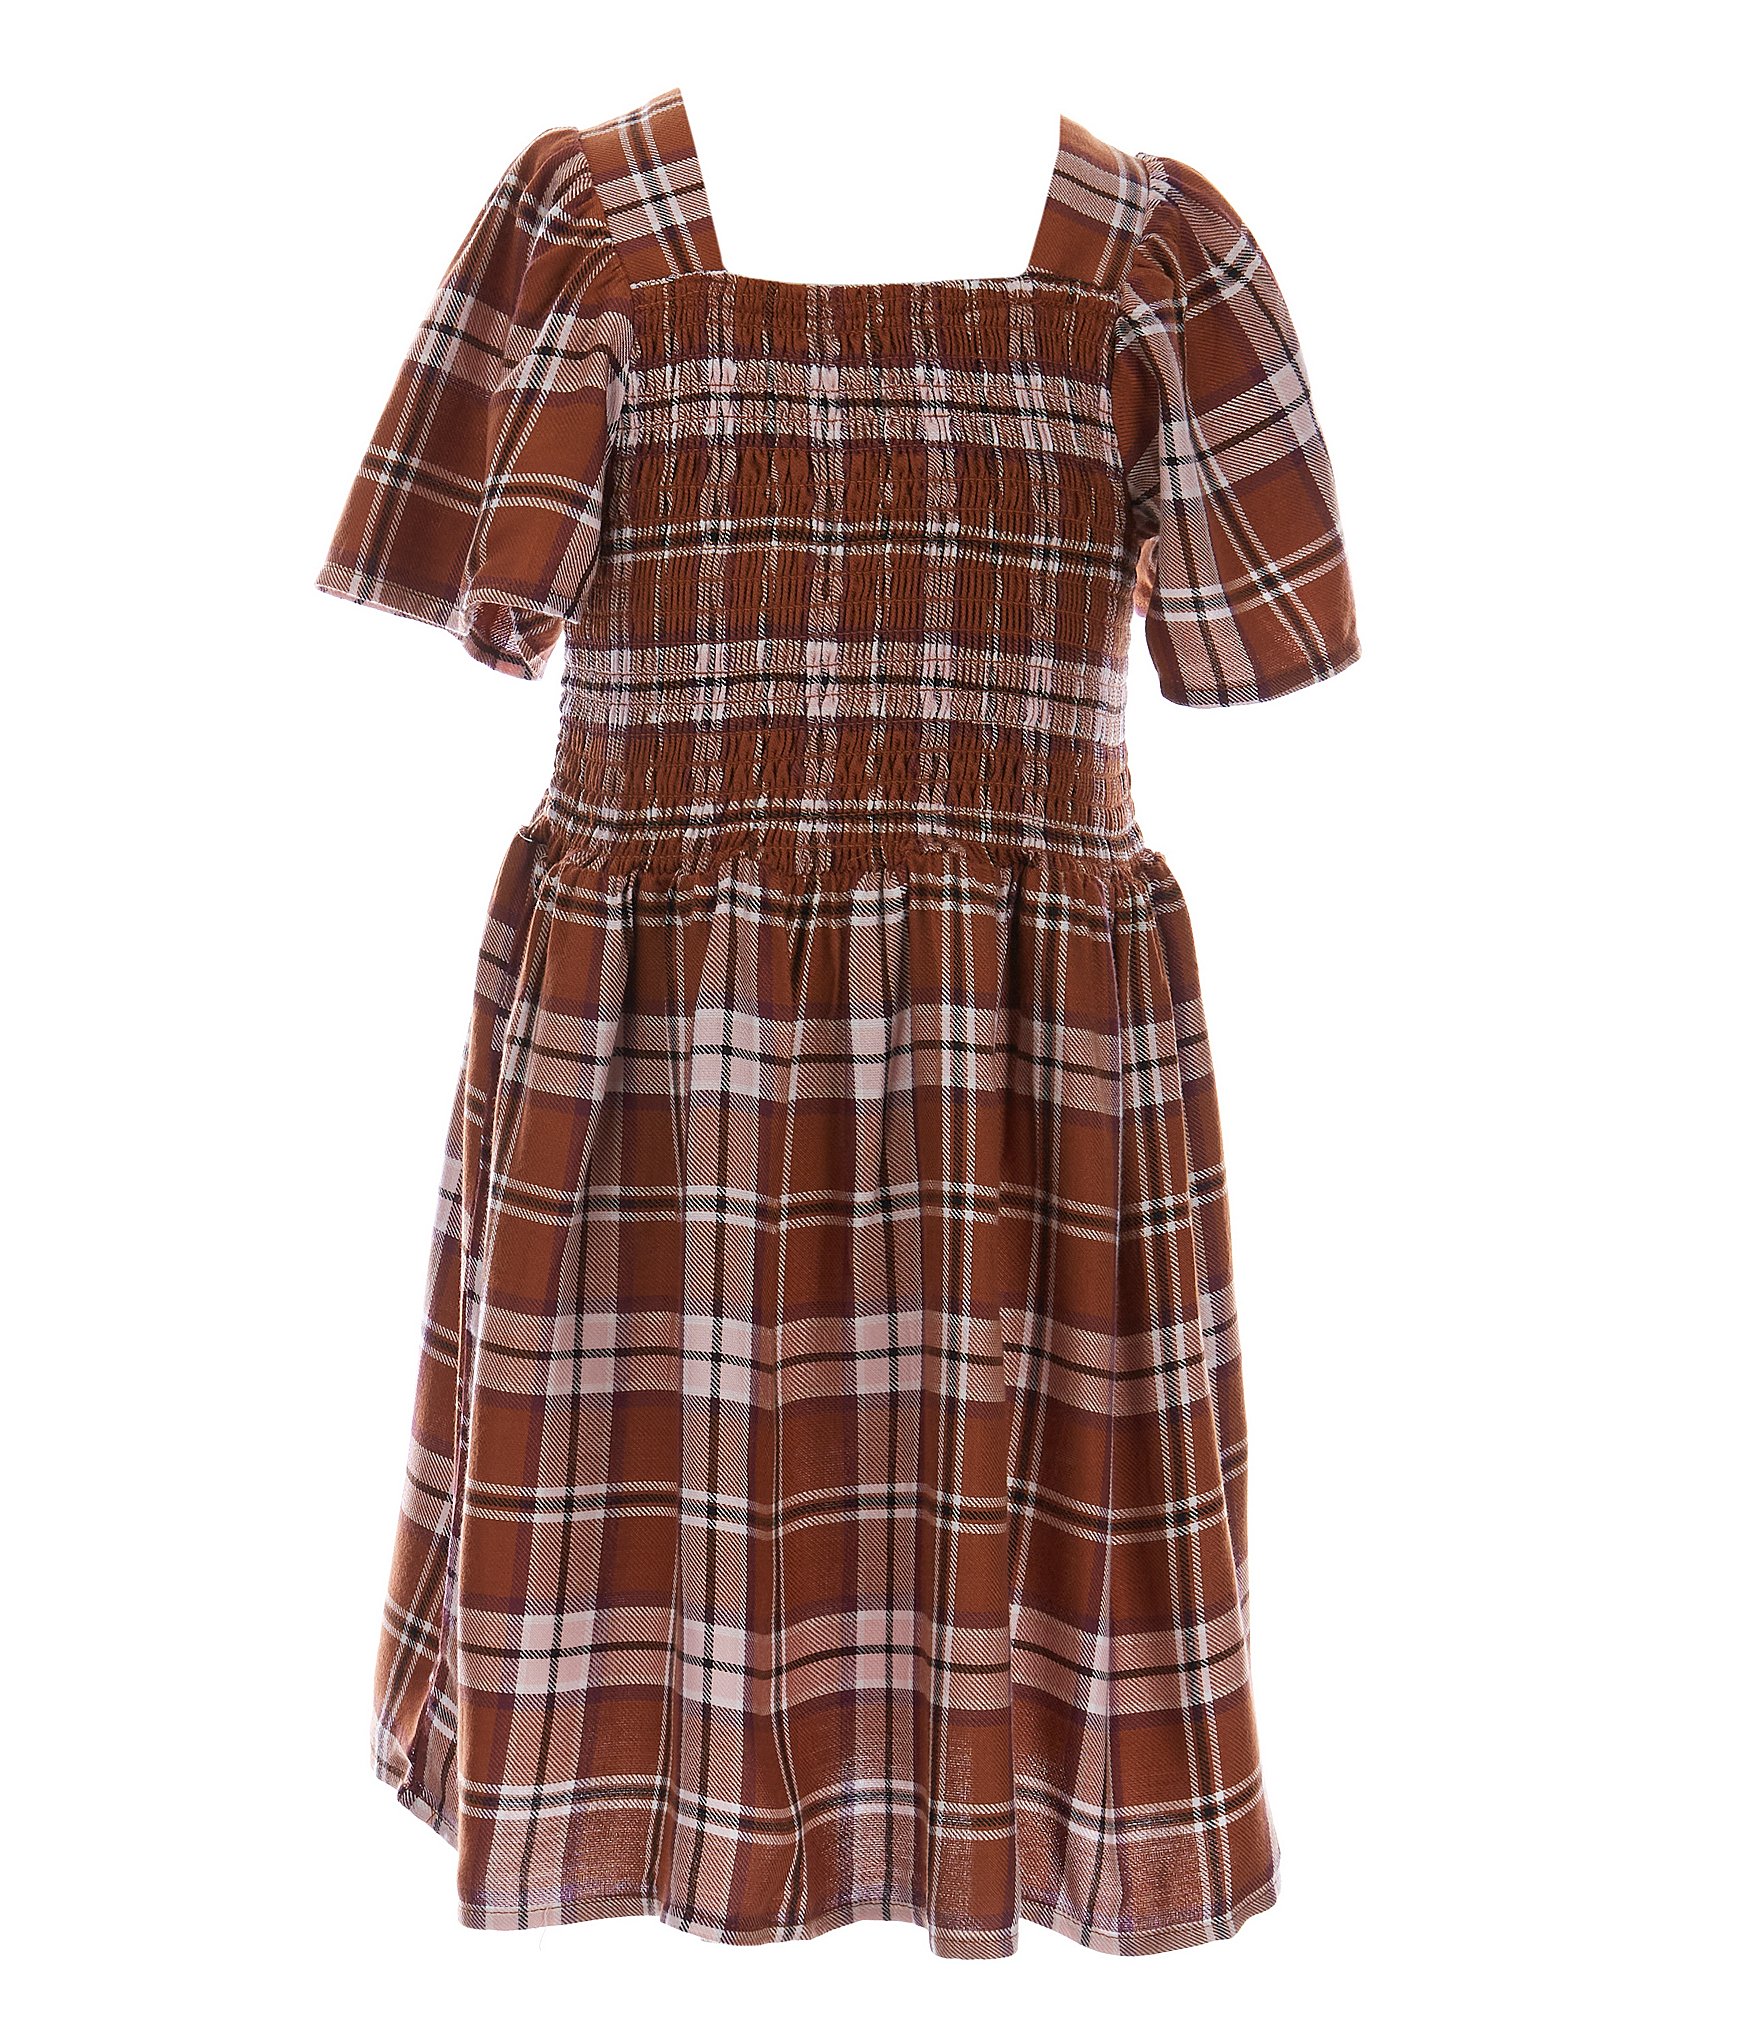 Copper Key Little Girls 2T-6X Smocked Plaid Dress | Dillard's